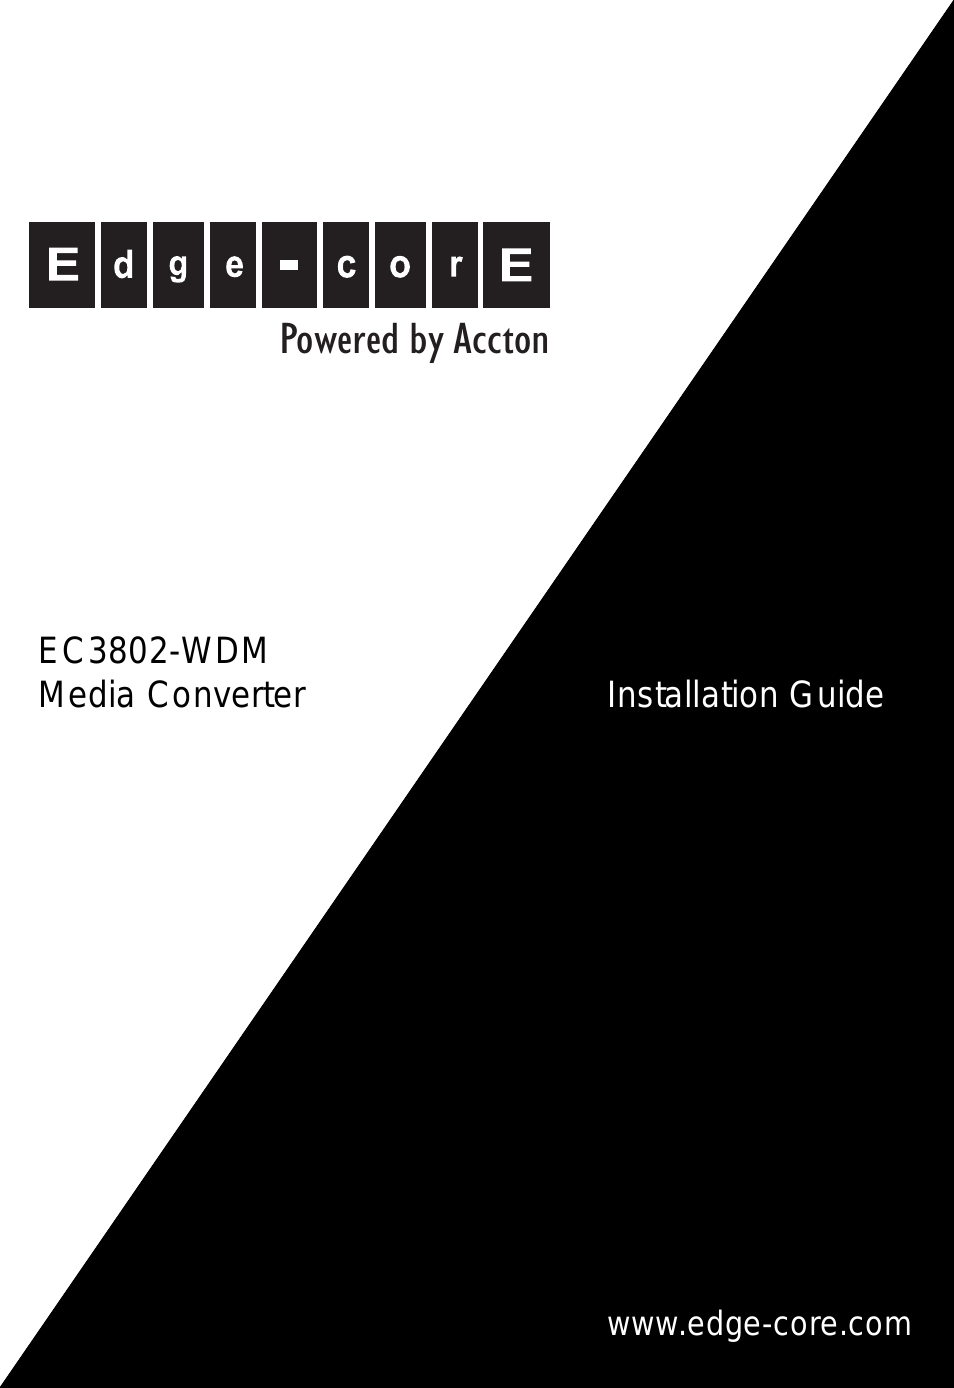 Media Converter EC3802-WDM